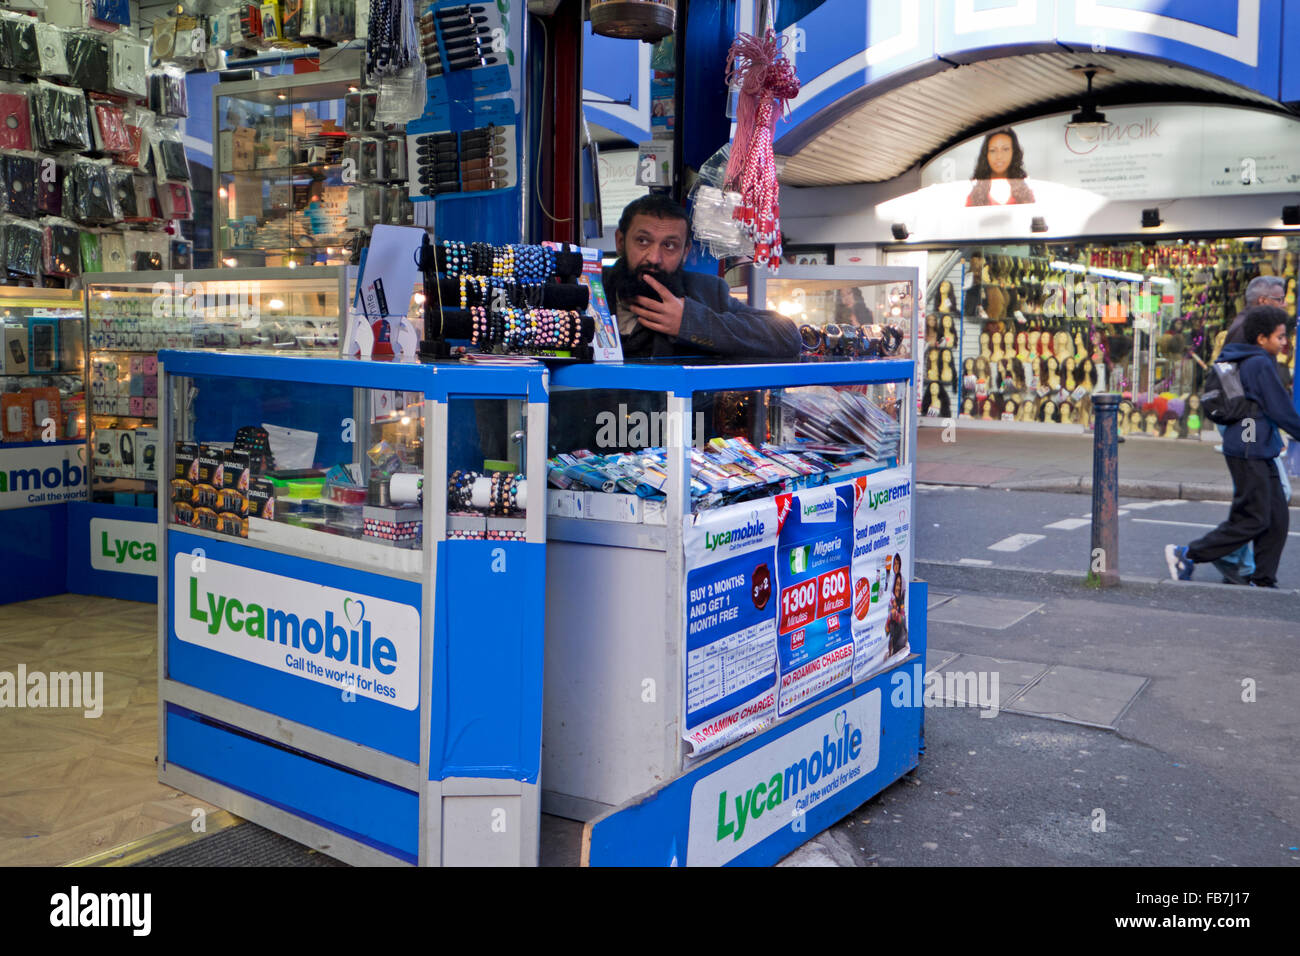 Vente de stand mobile phone accessories dans rues de Brixton dans le sud de Londres Banque D'Images